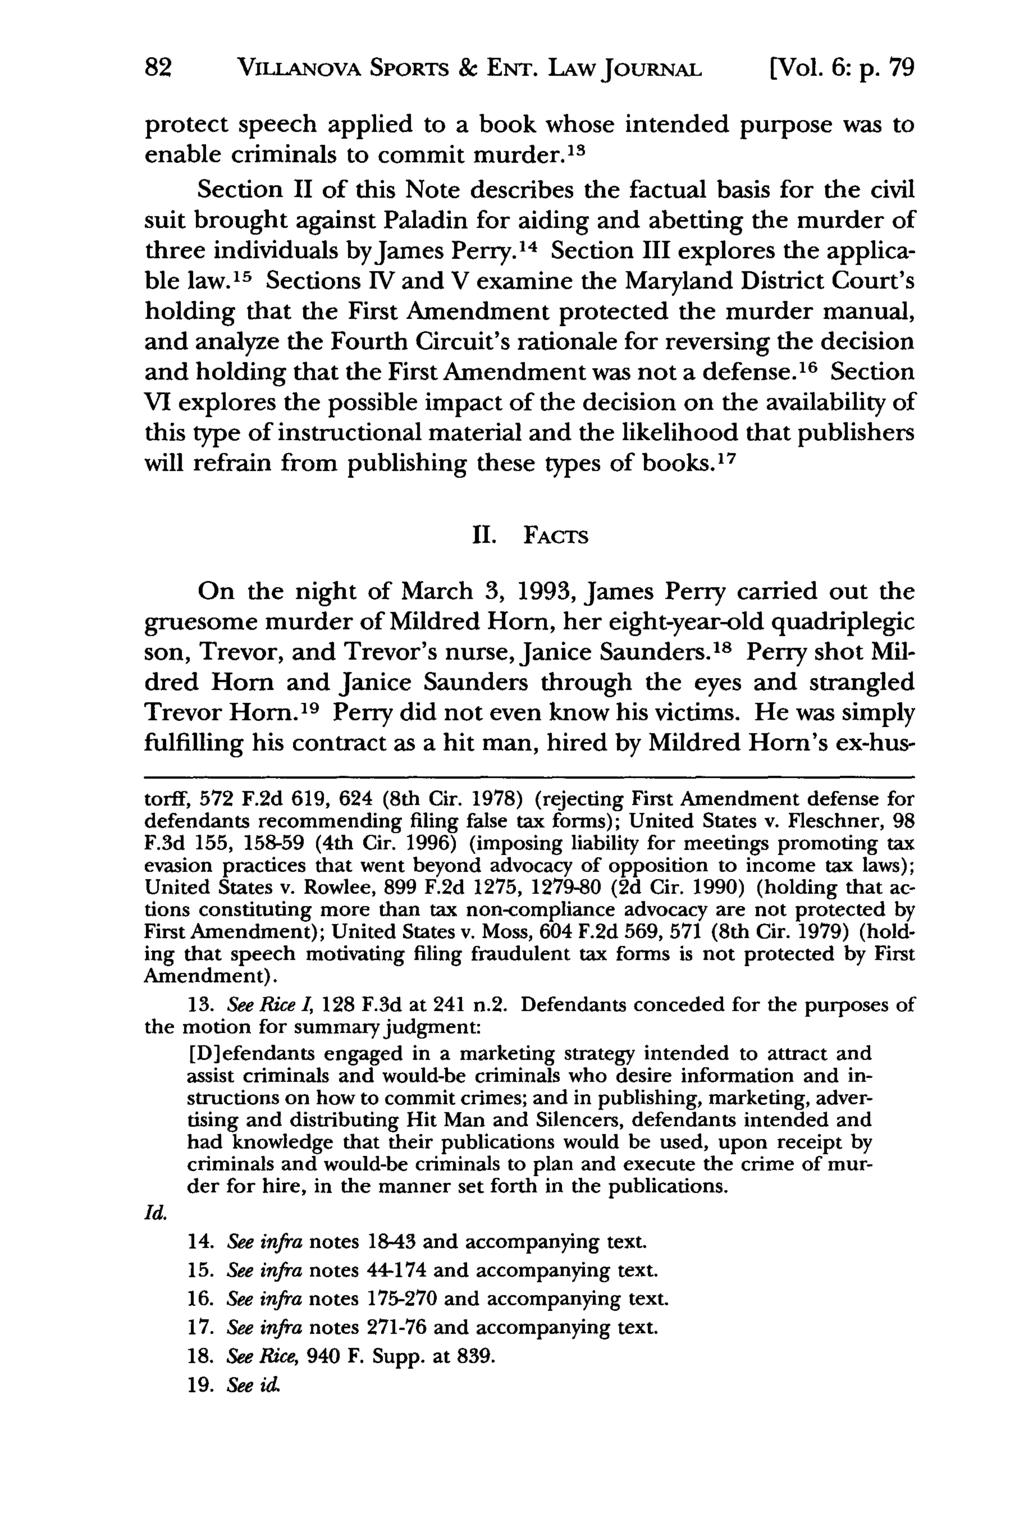 82 Jeffrey S. Moorad VILLANOVA SPORTS Sports Law & Journal, ENT. LAw Vol. 6, Iss. 1 [1999], Art. 5 JOURNAL [Vol. 6: p.